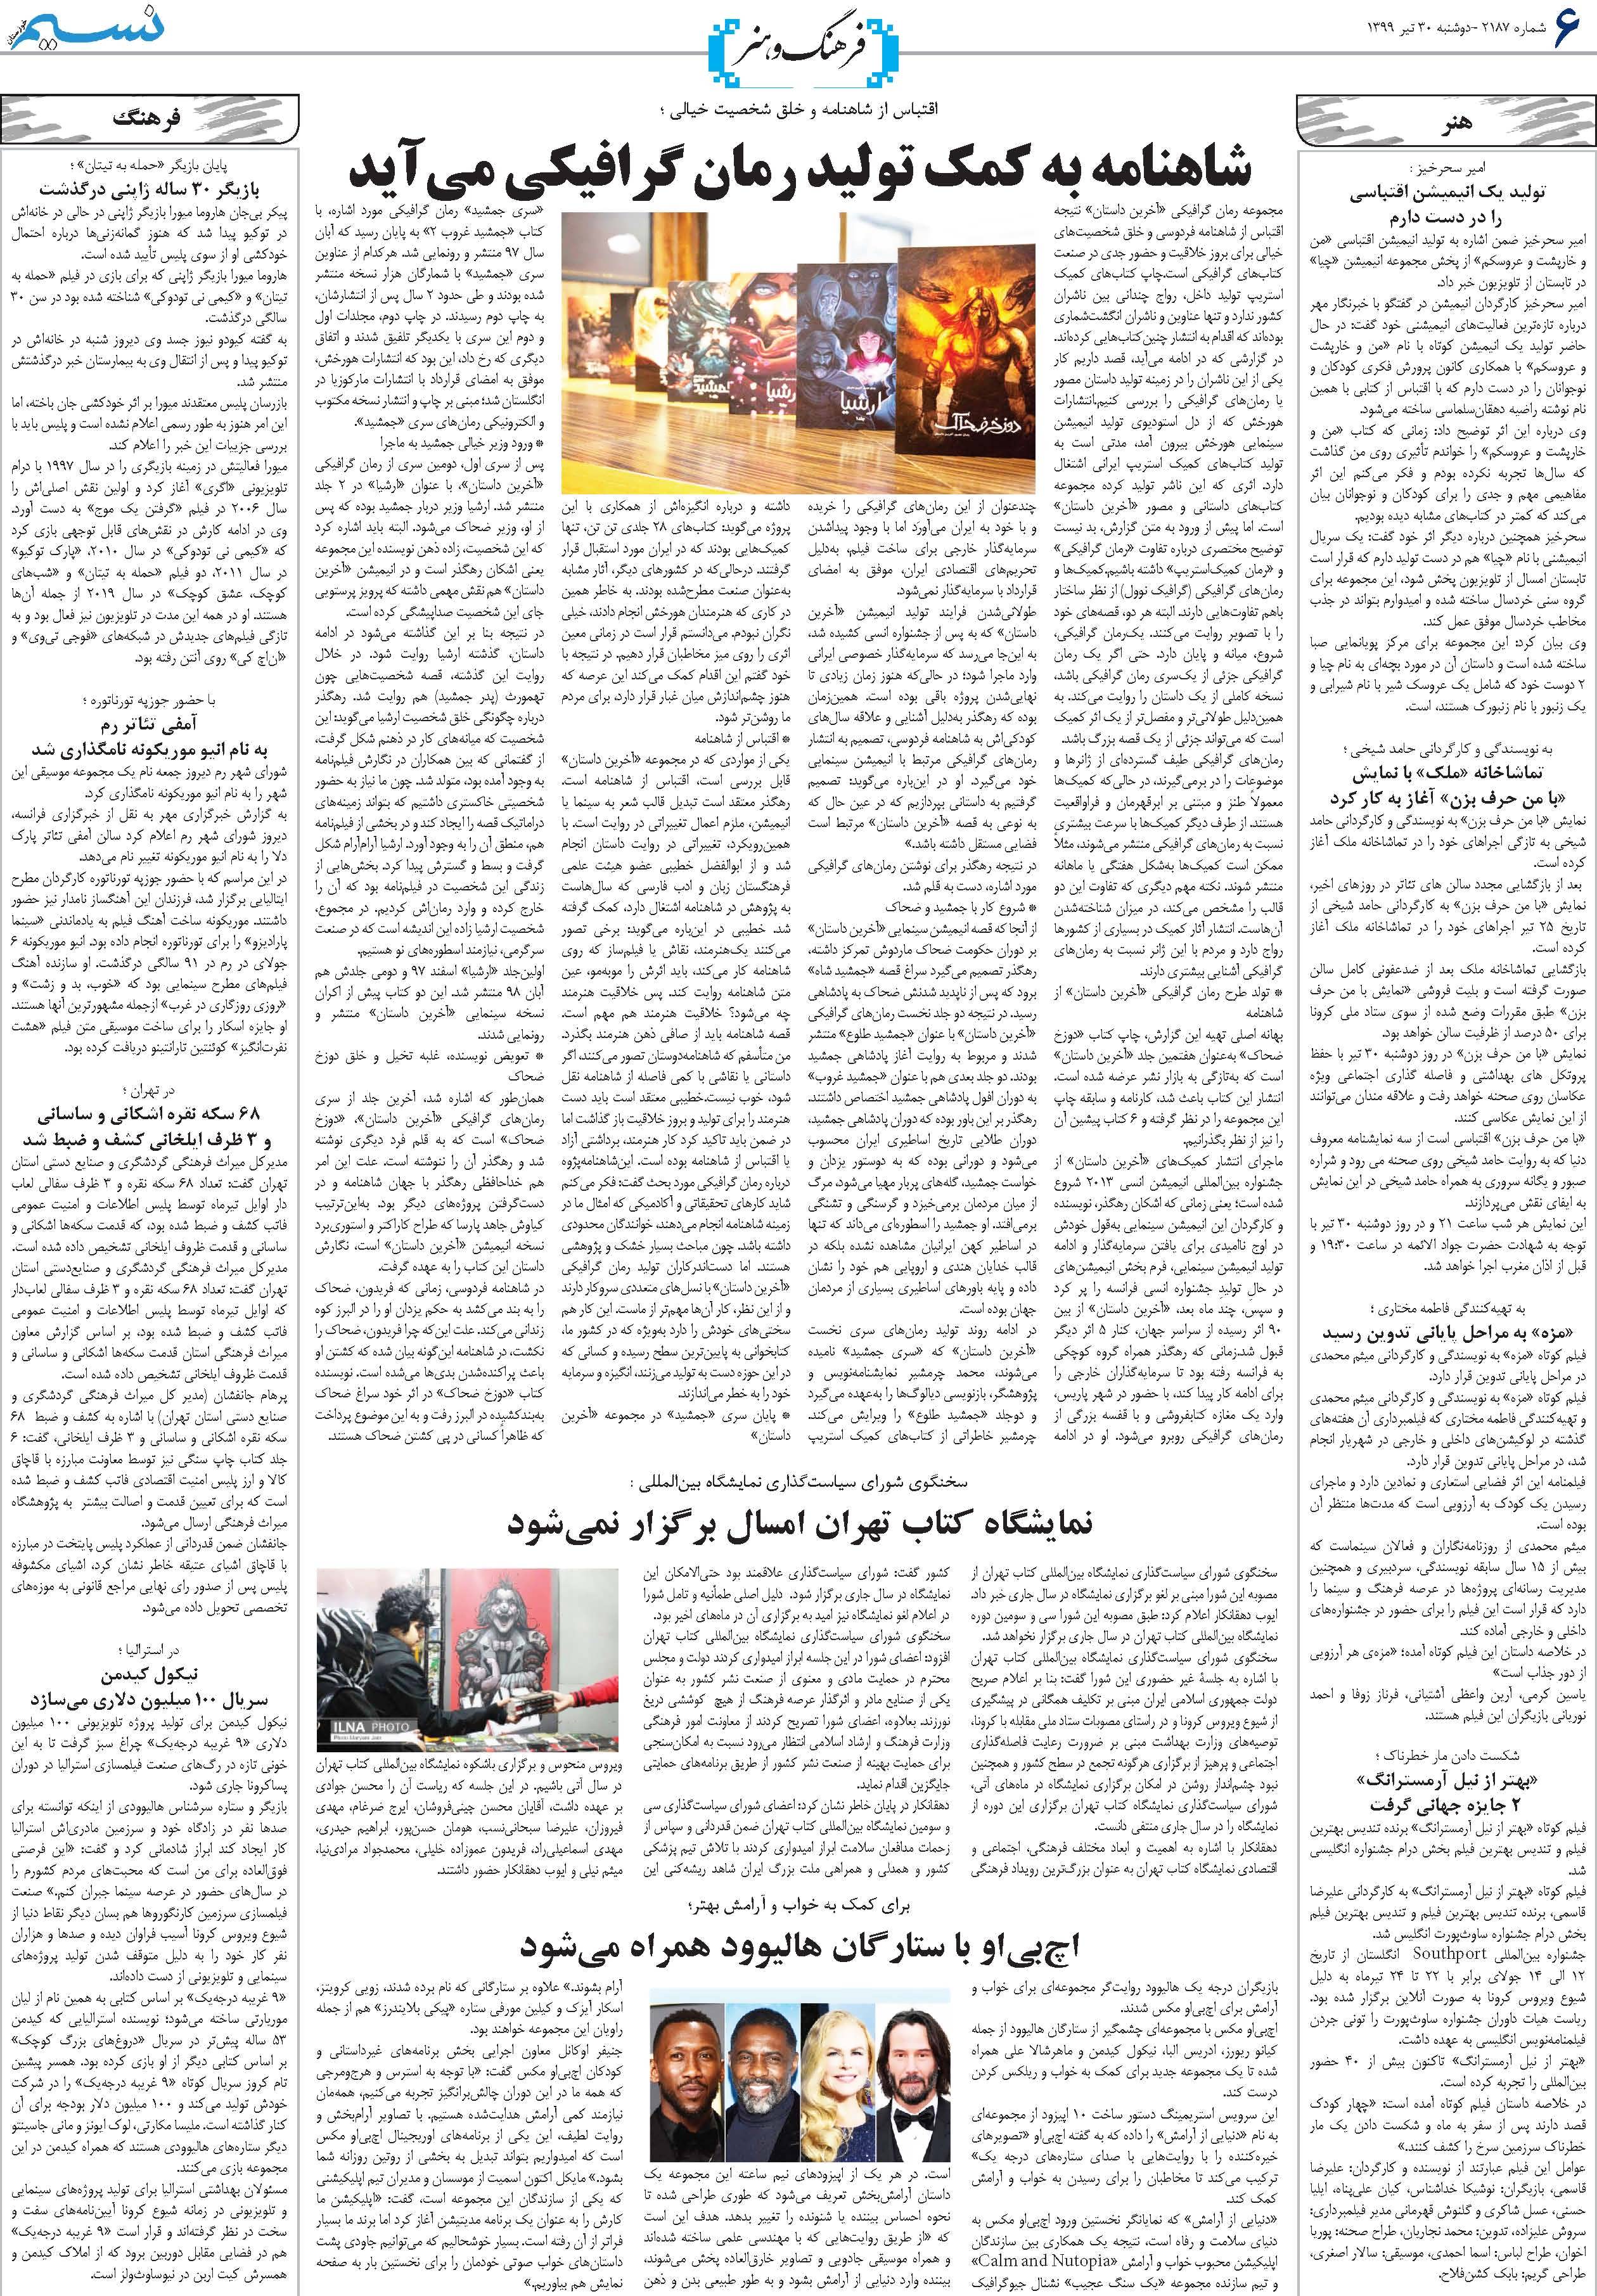 صفحه فرهنگ و هنر روزنامه نسیم شماره 2187